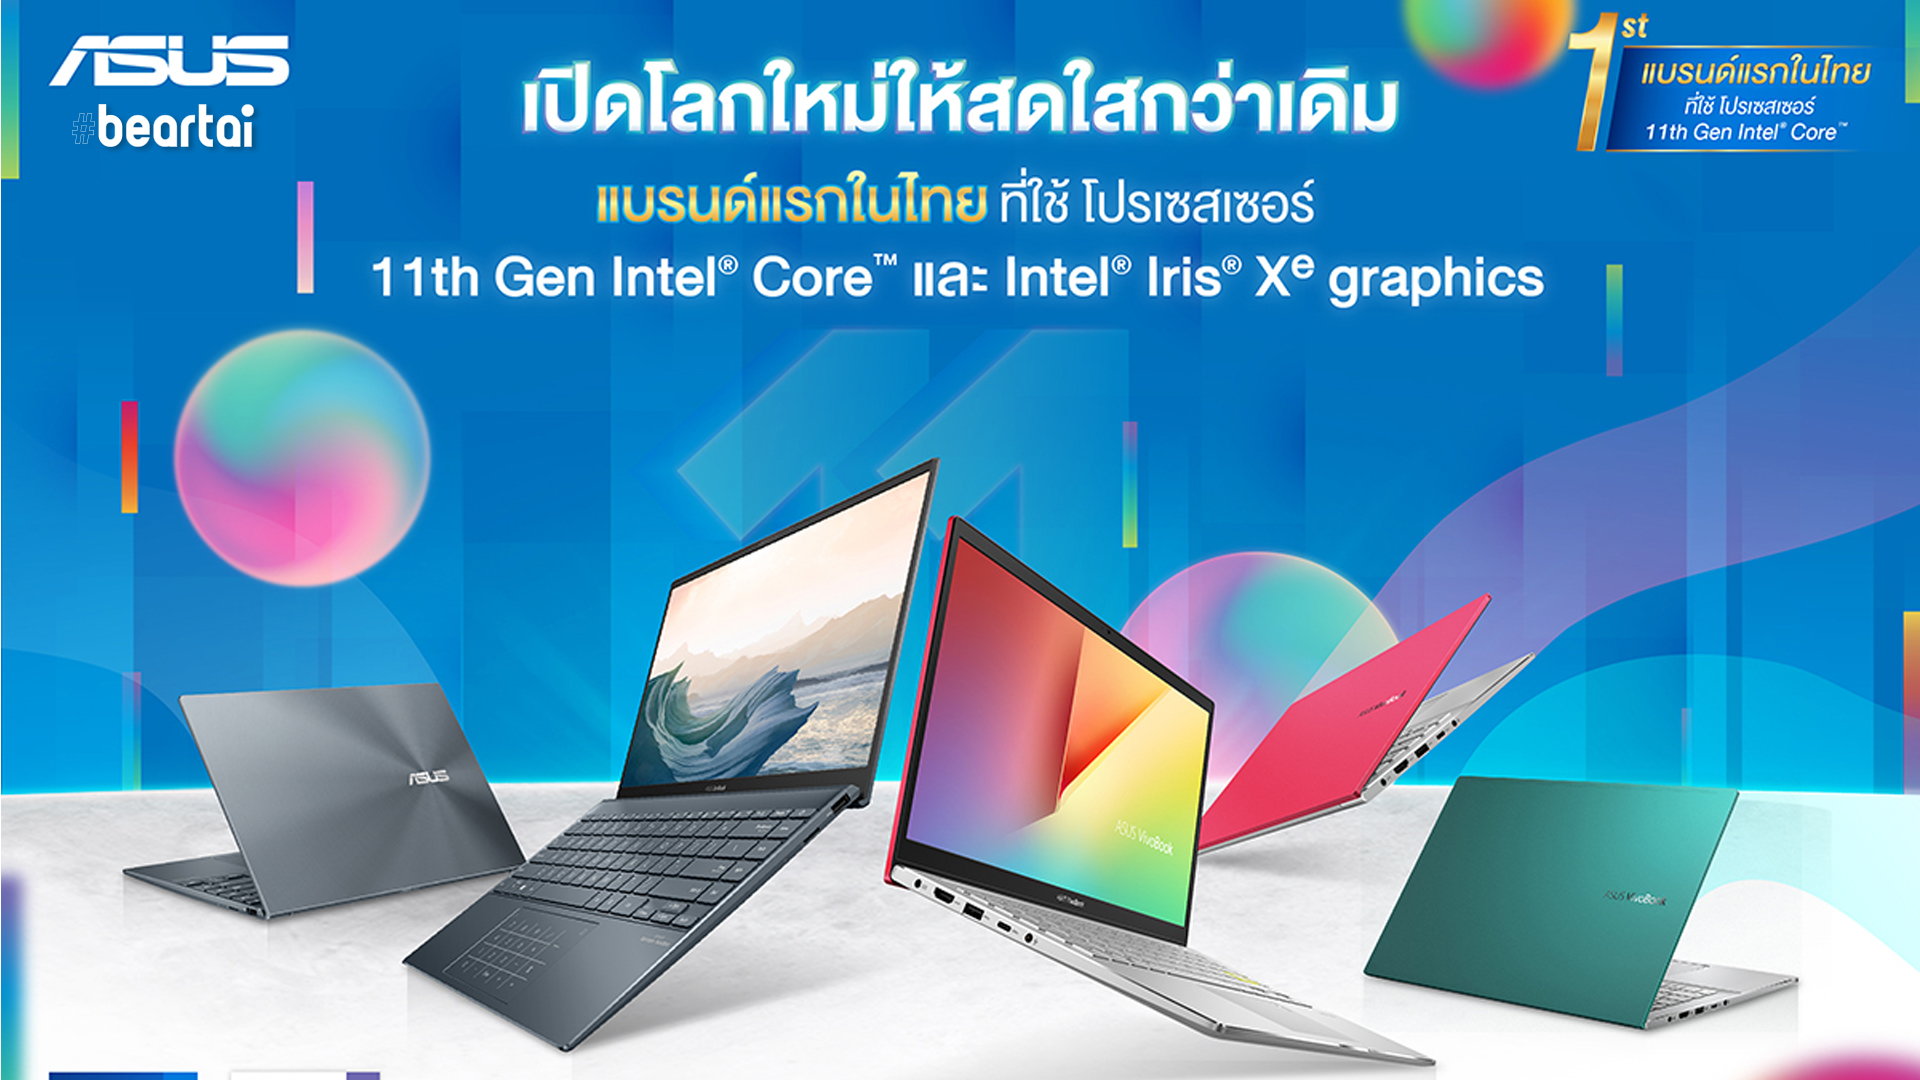 เปิดตัว ASUS VivoBook Series และ ASUS ZenBook UX425 มาพร้อม 11th Gen Intel® Core™ โปรเซสเซอร์